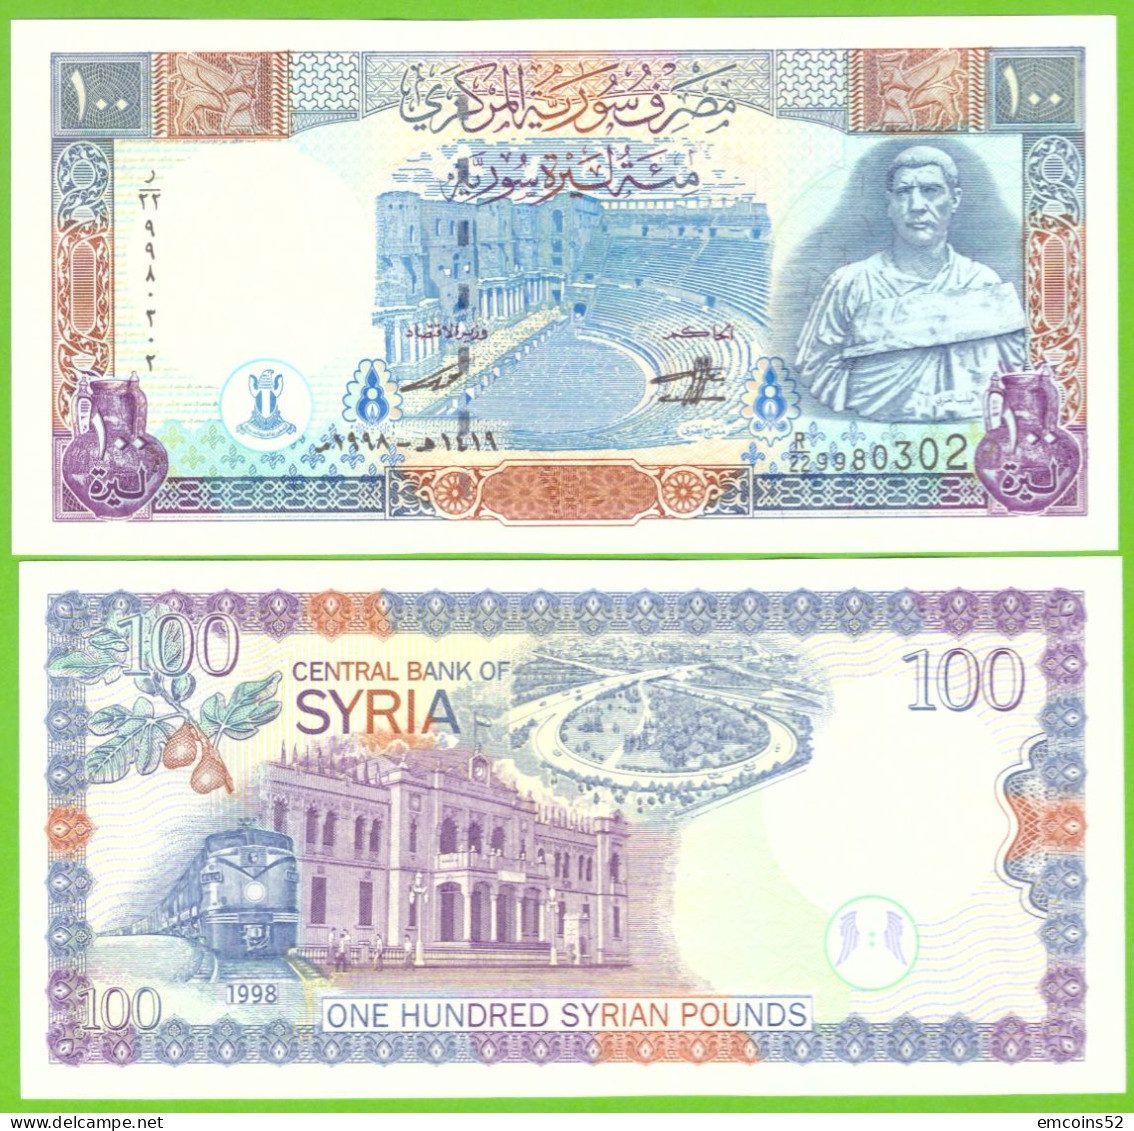 SYRIA 100 POUNDS 1998 P-108 UNC - Syrië